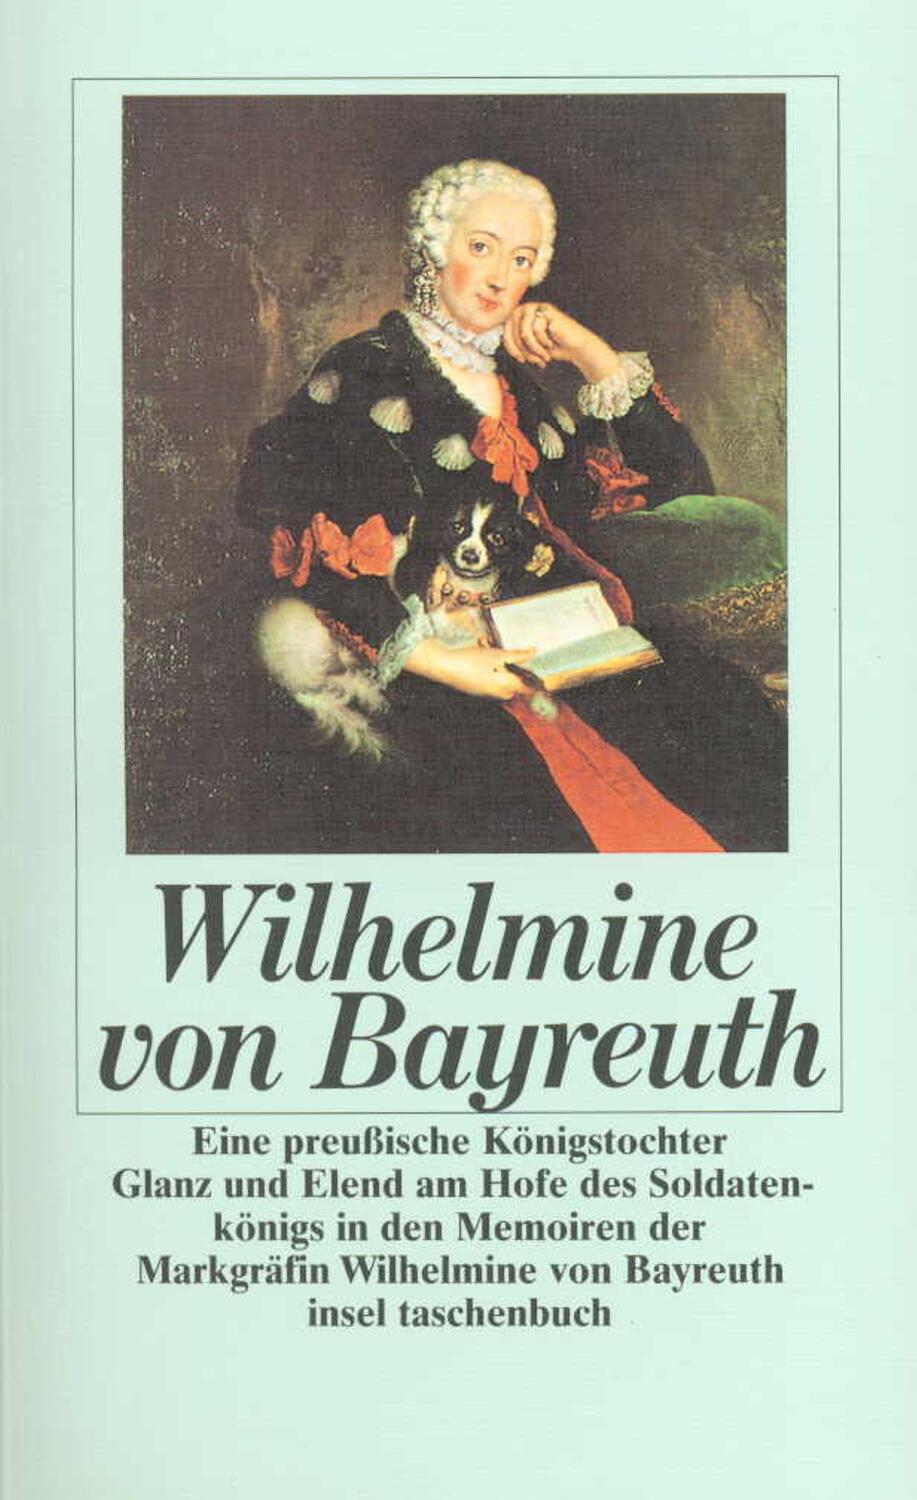 Eine preußische Königstochter - Wilhelmine von Bayreuth